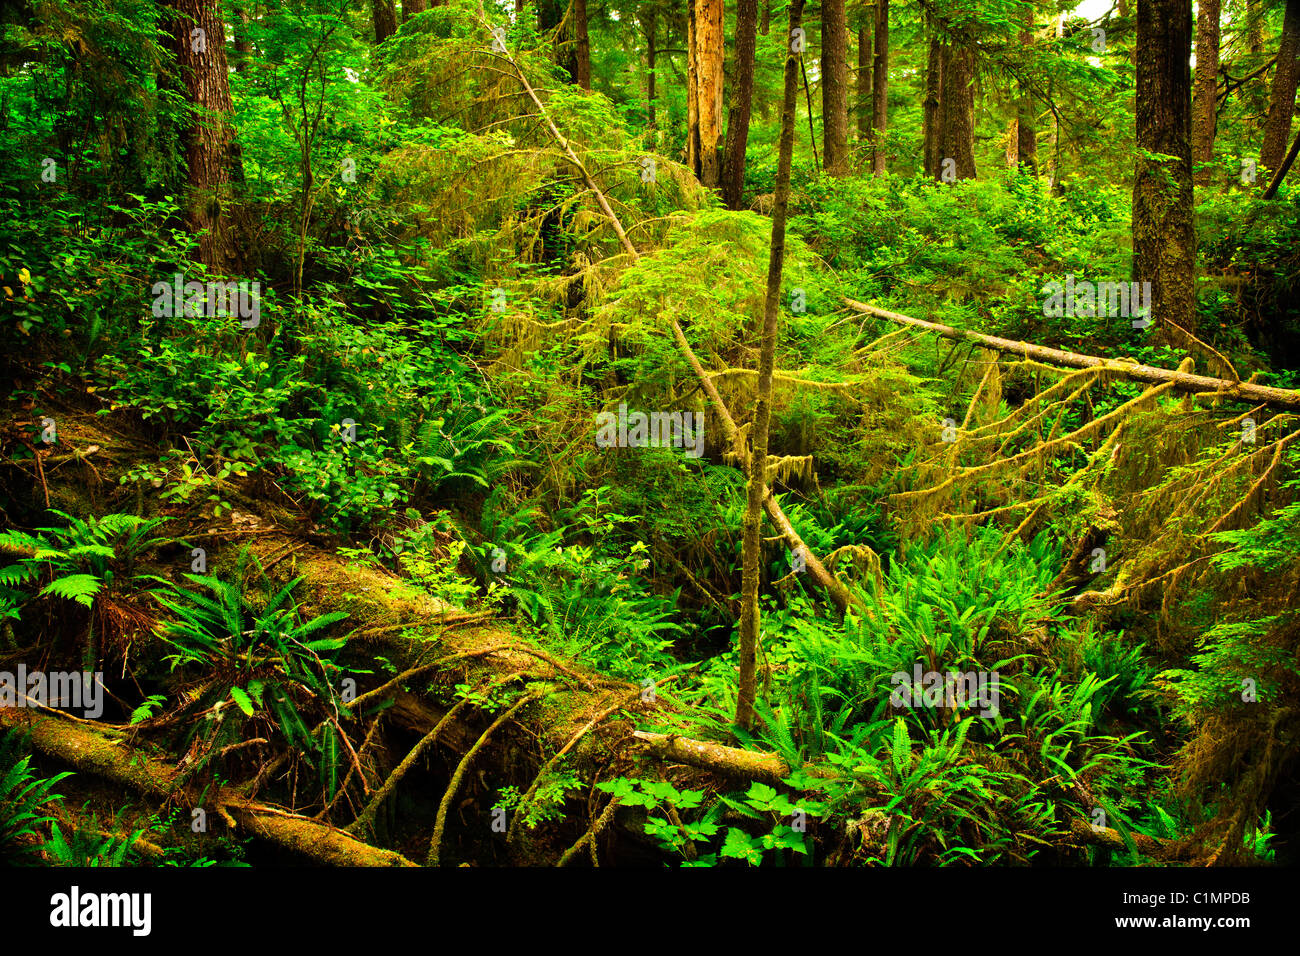 Le feuillage luxuriant des forêts pluviales tempérées. Pacific Rim National Park, British Columbia Canada Banque D'Images